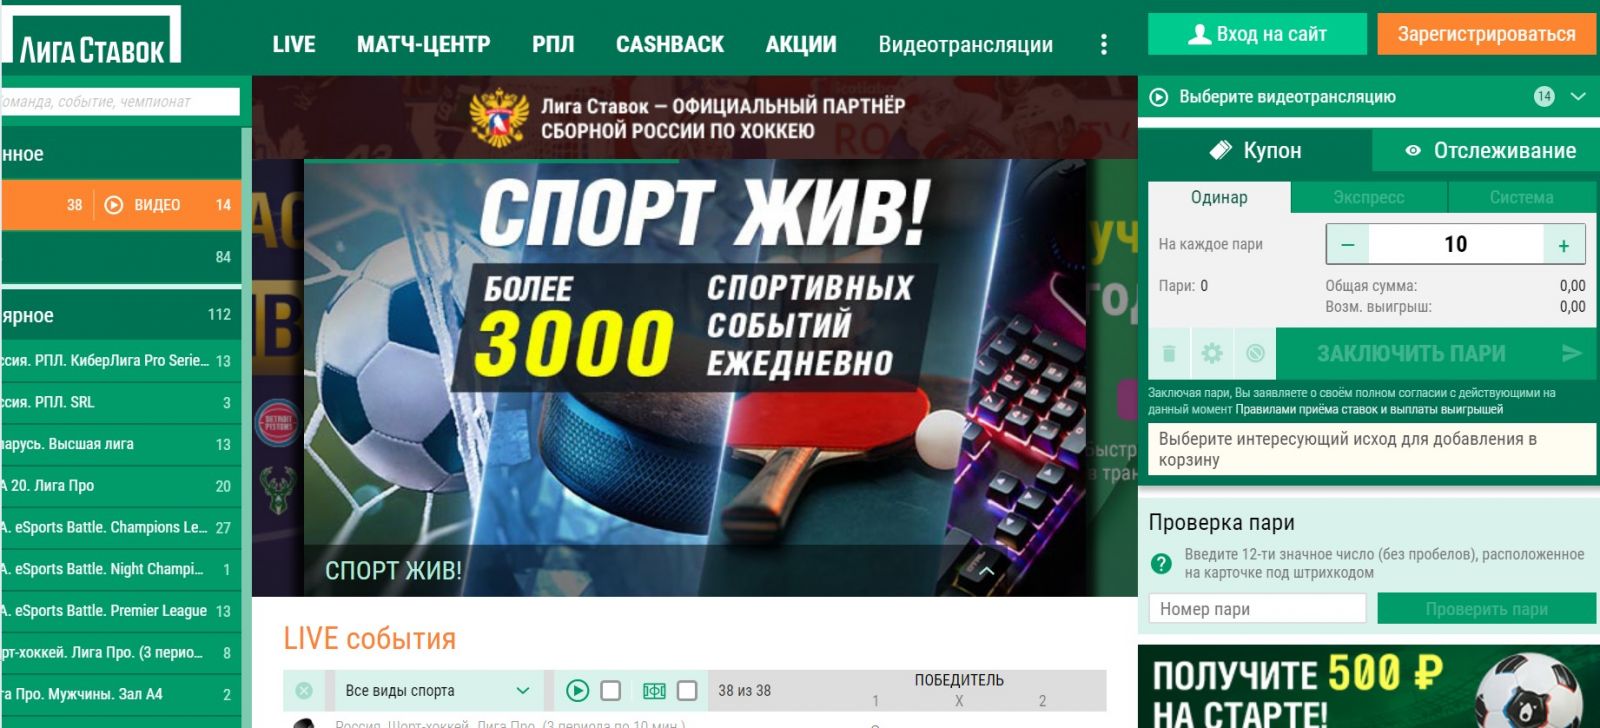 Ставки на спорт российские компании игра авиатор покердом